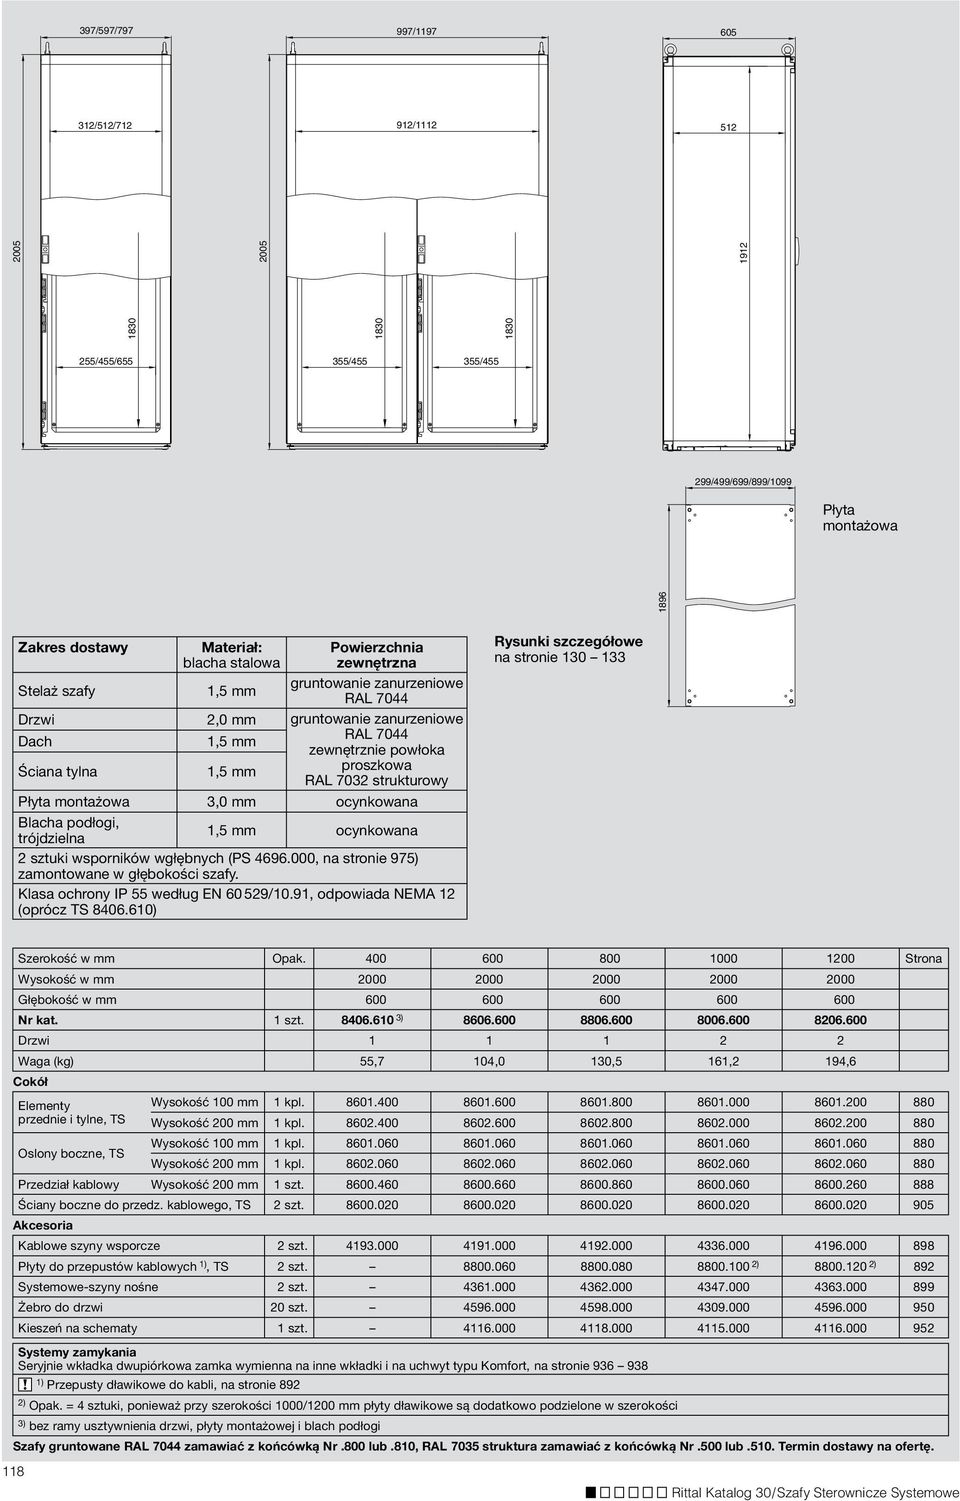 Powierzchnia zewnętrzna Stelaż szafy gruntowanie zanurzeniowe Drzwi 2,0 mm gruntowanie zanurzeniowe Dach zewnętrznie powłoka Ściana tylna proszkowa RAL 7032 strukturowy Płyta montażowa 3,0 mm